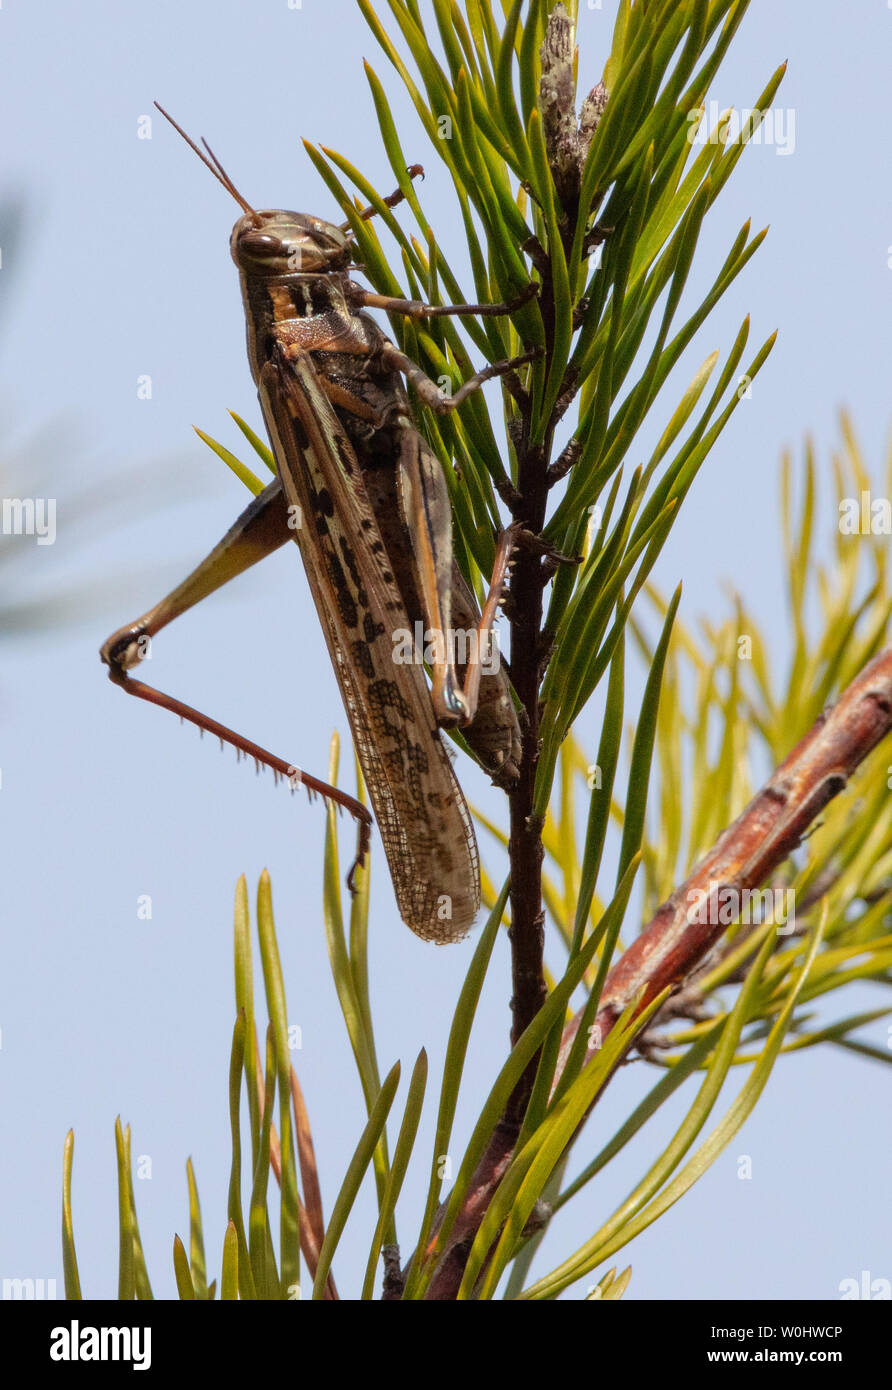 American bird grasshopper (Schistocerca americana) in a pine tree Stock Photo